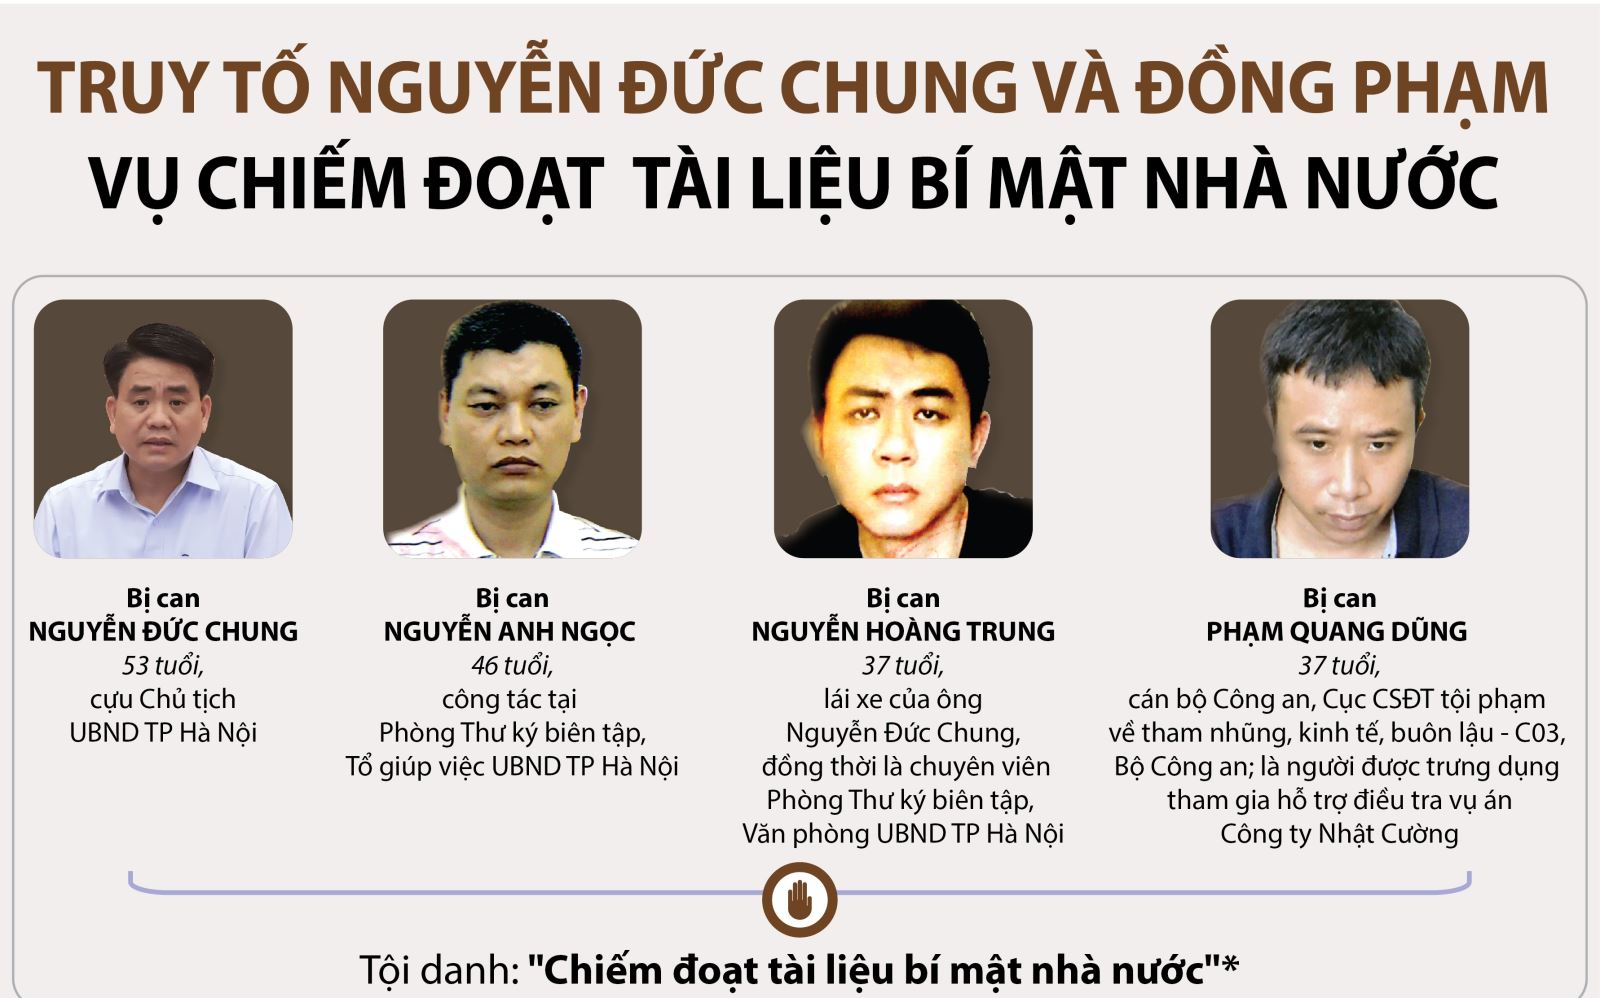 Bốn bị cáo: Nguyễn Đức Chung, Nguyễn Anh Ngọc, Nguyễn Hoàng Trung, Phạm Quang Dũng.